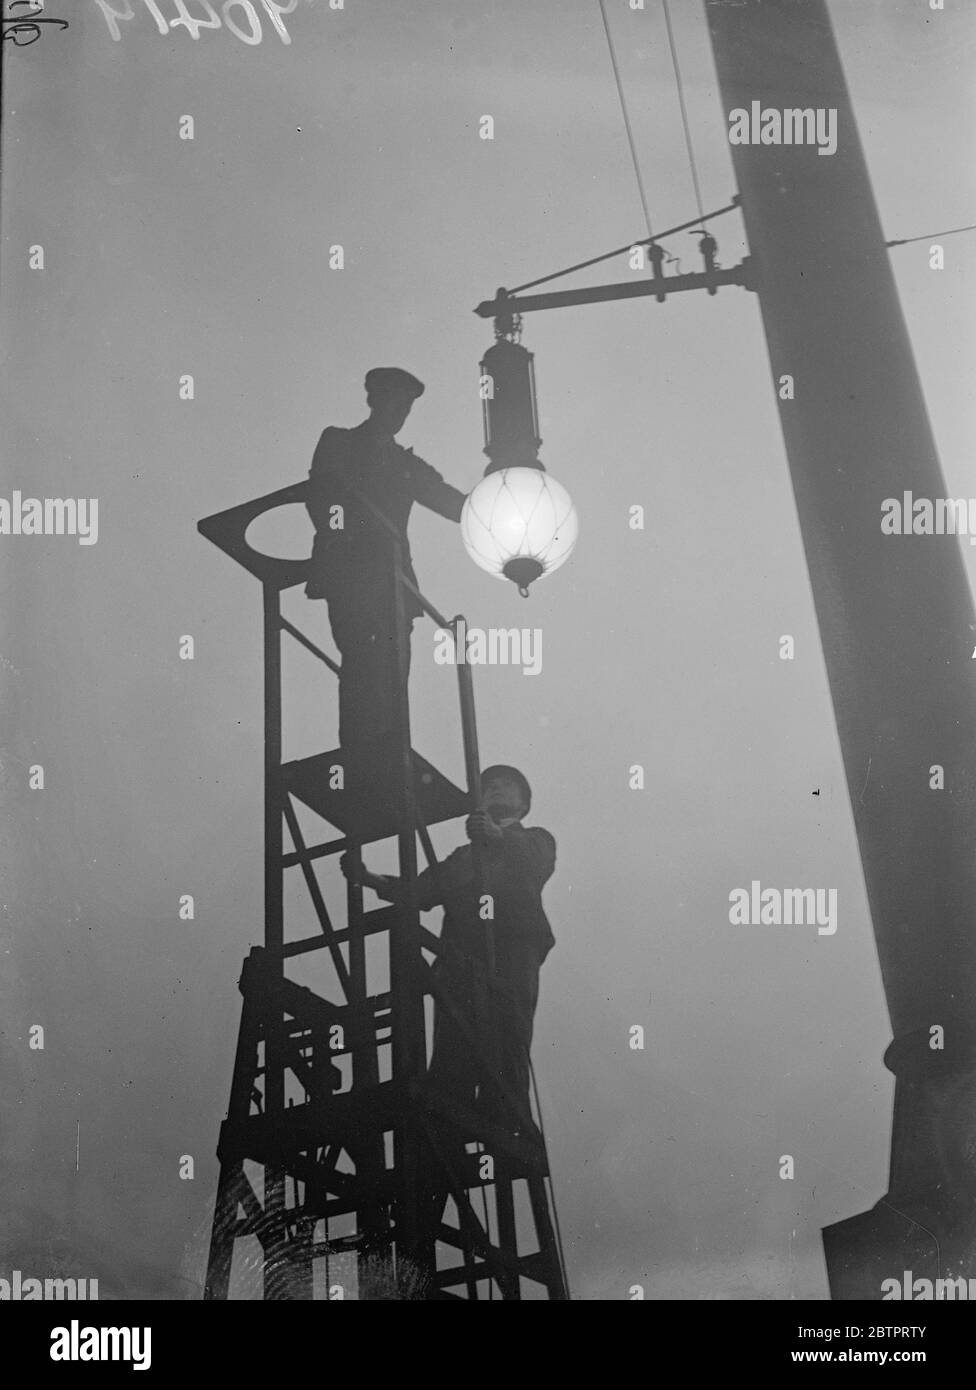 Nebel verlangsamt sich, London. Tausende Londoner wurden auf ihrem Weg zur Arbeit durch den dichten weißen Nebel, der die Transportdienste legte, aufgehalten. Fotoausstellungen, Arbeiter, die sich während einer Lampe in der nebligen Dunkelheit am Bahnhof Liverpool Street umgaben. 18. Oktober 1937 Stockfoto